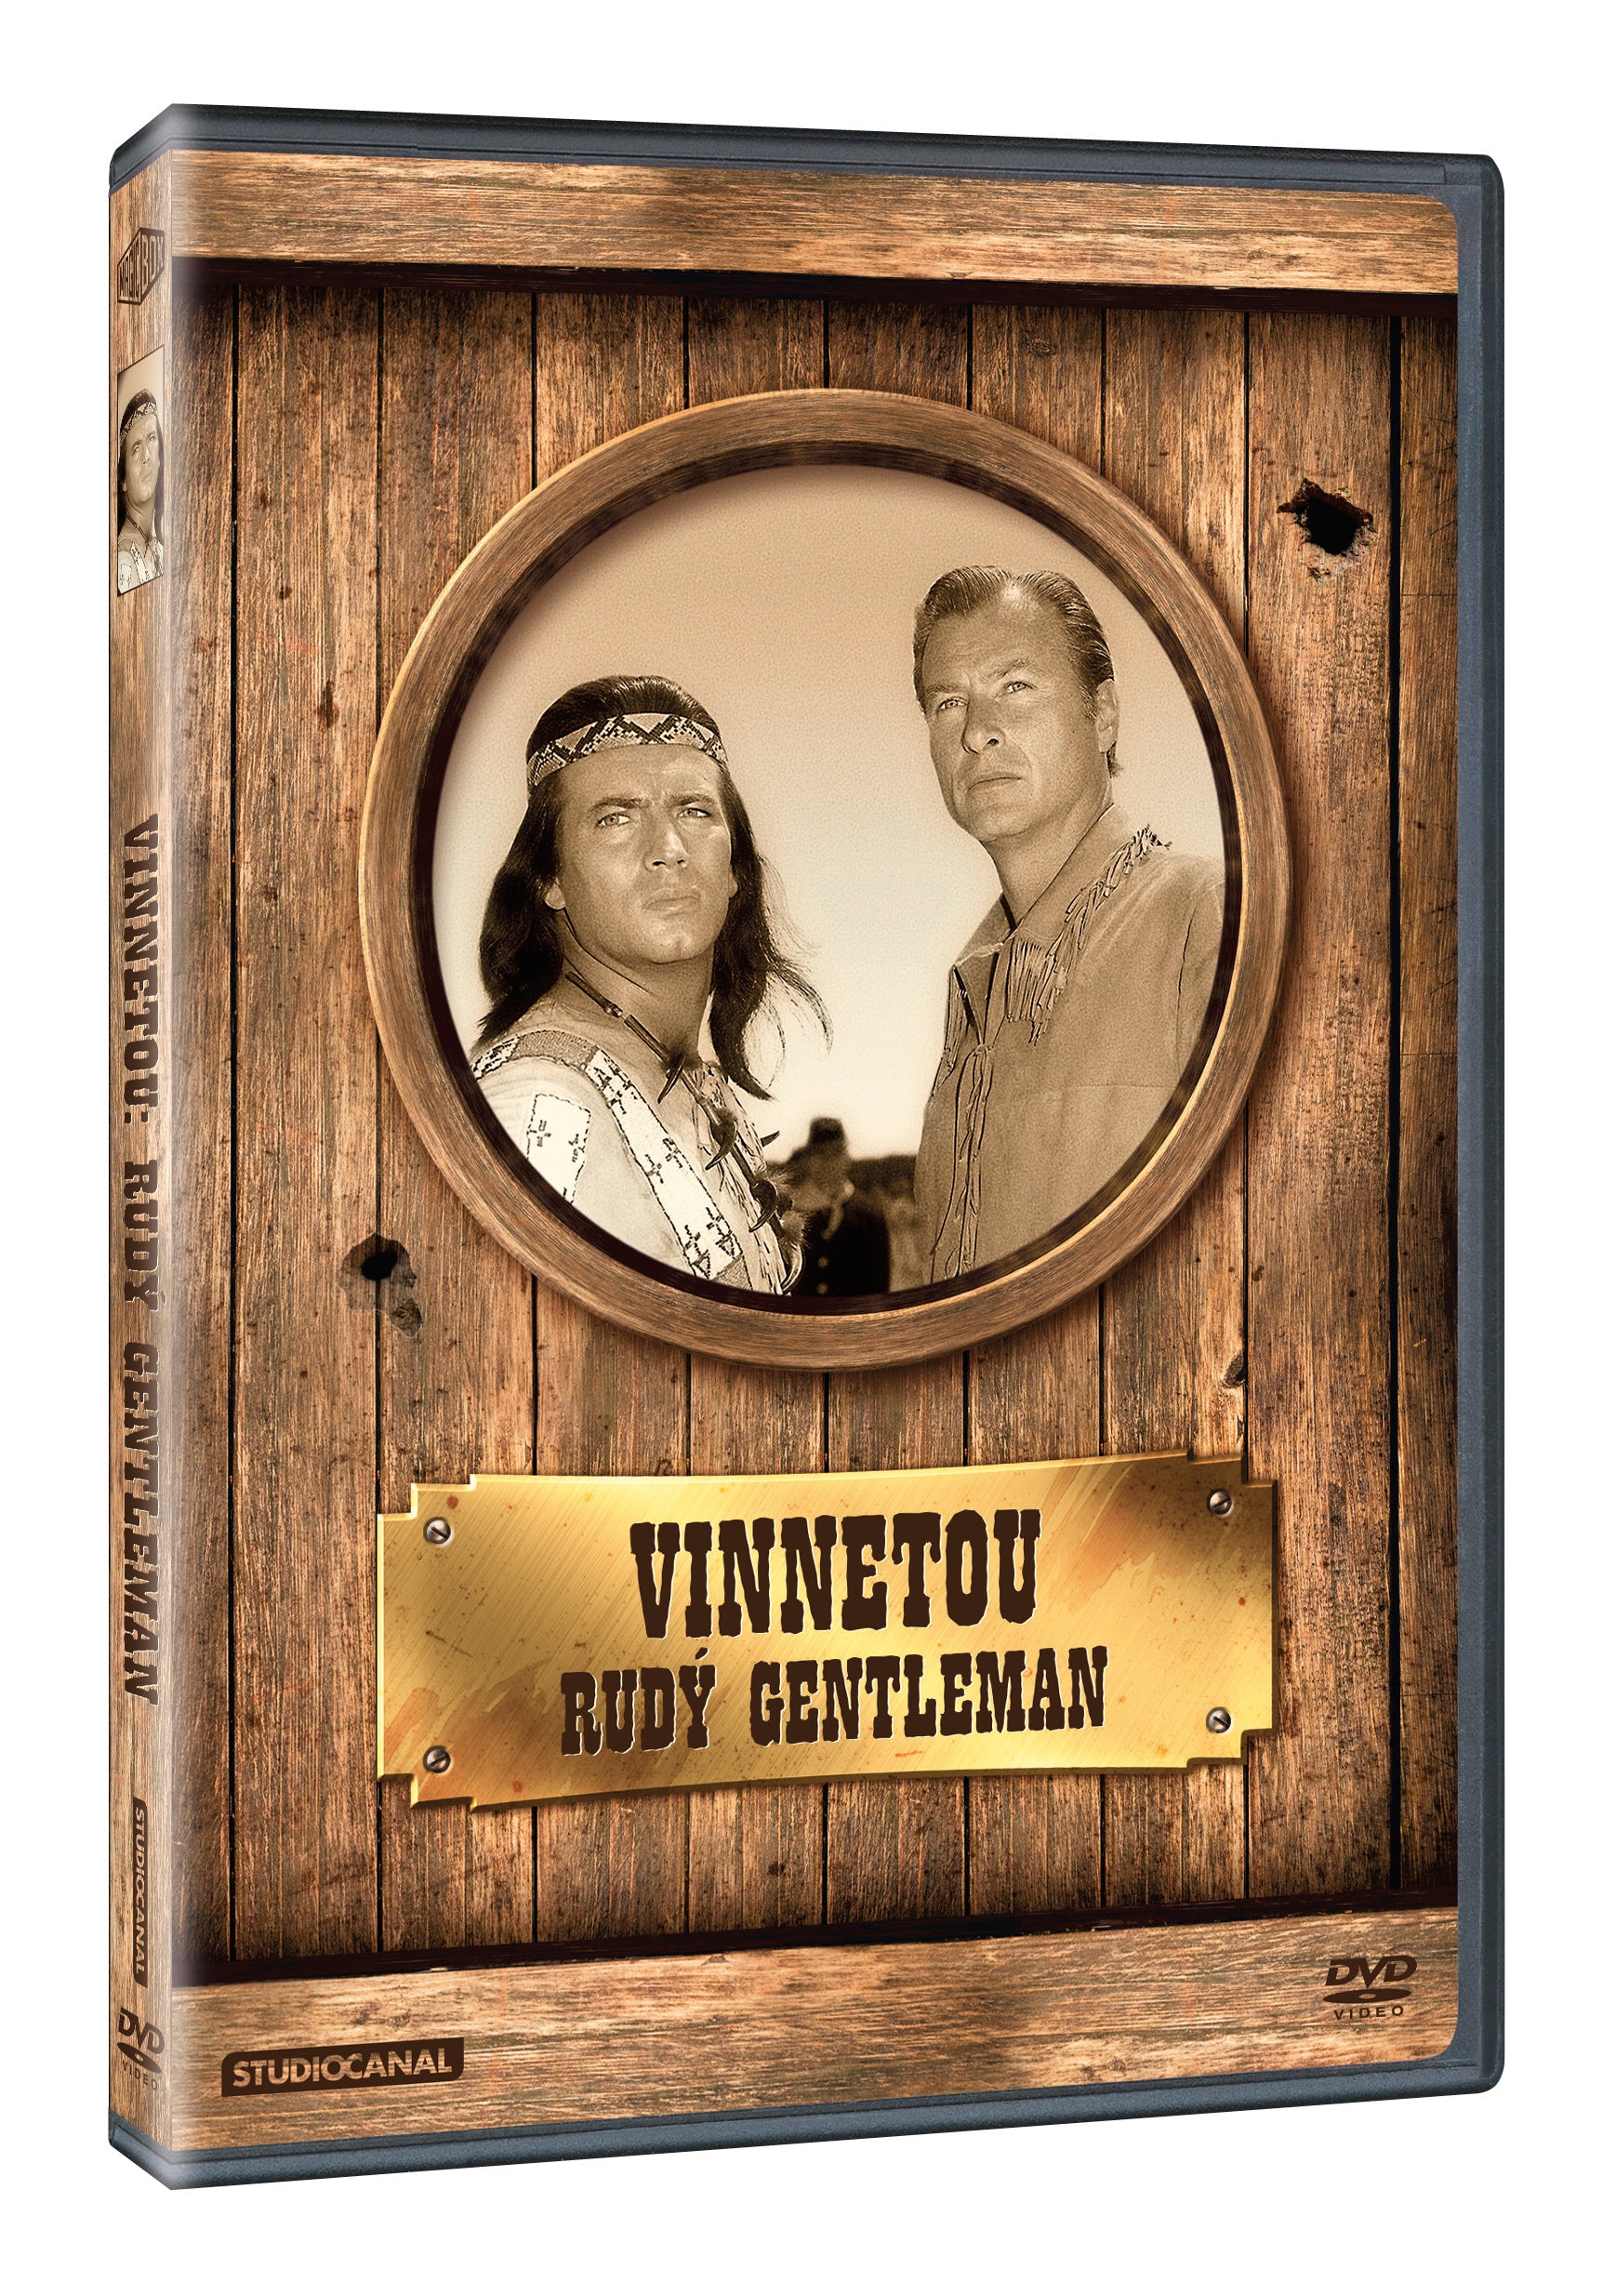 Vinnetou - Rudy gentleman DVD / Winnetou II